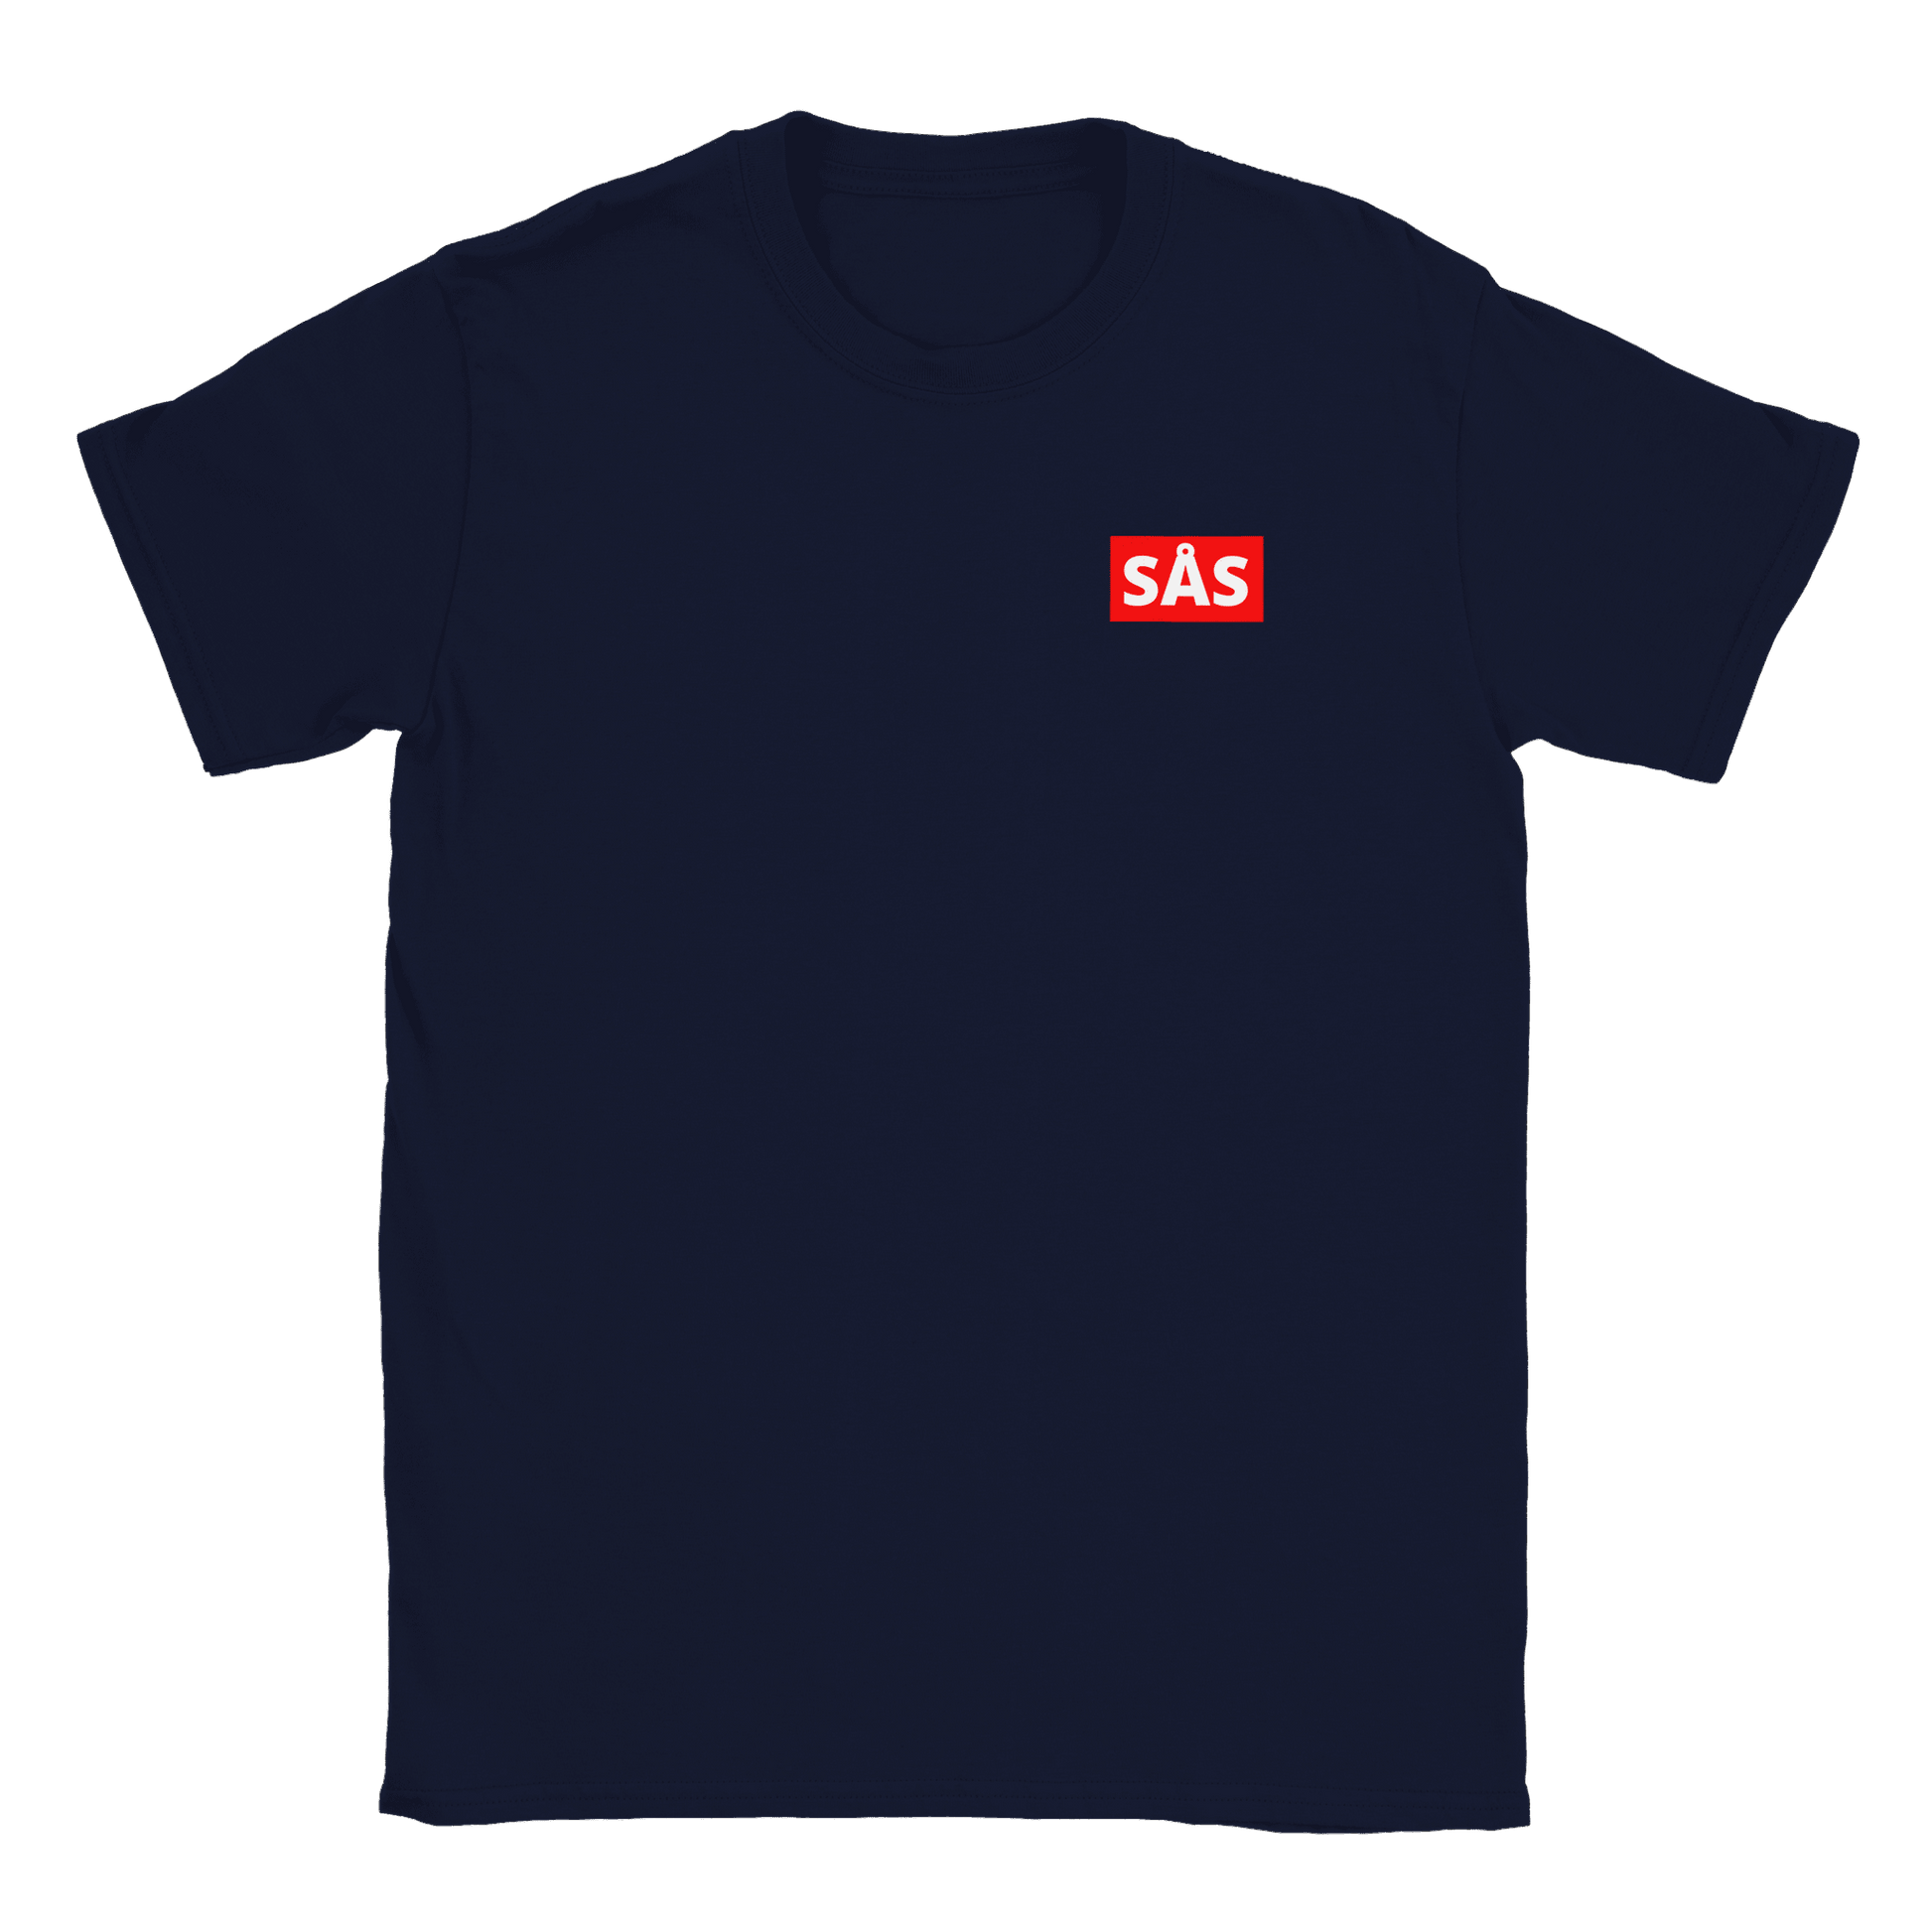 Sås - T-shirt Navy